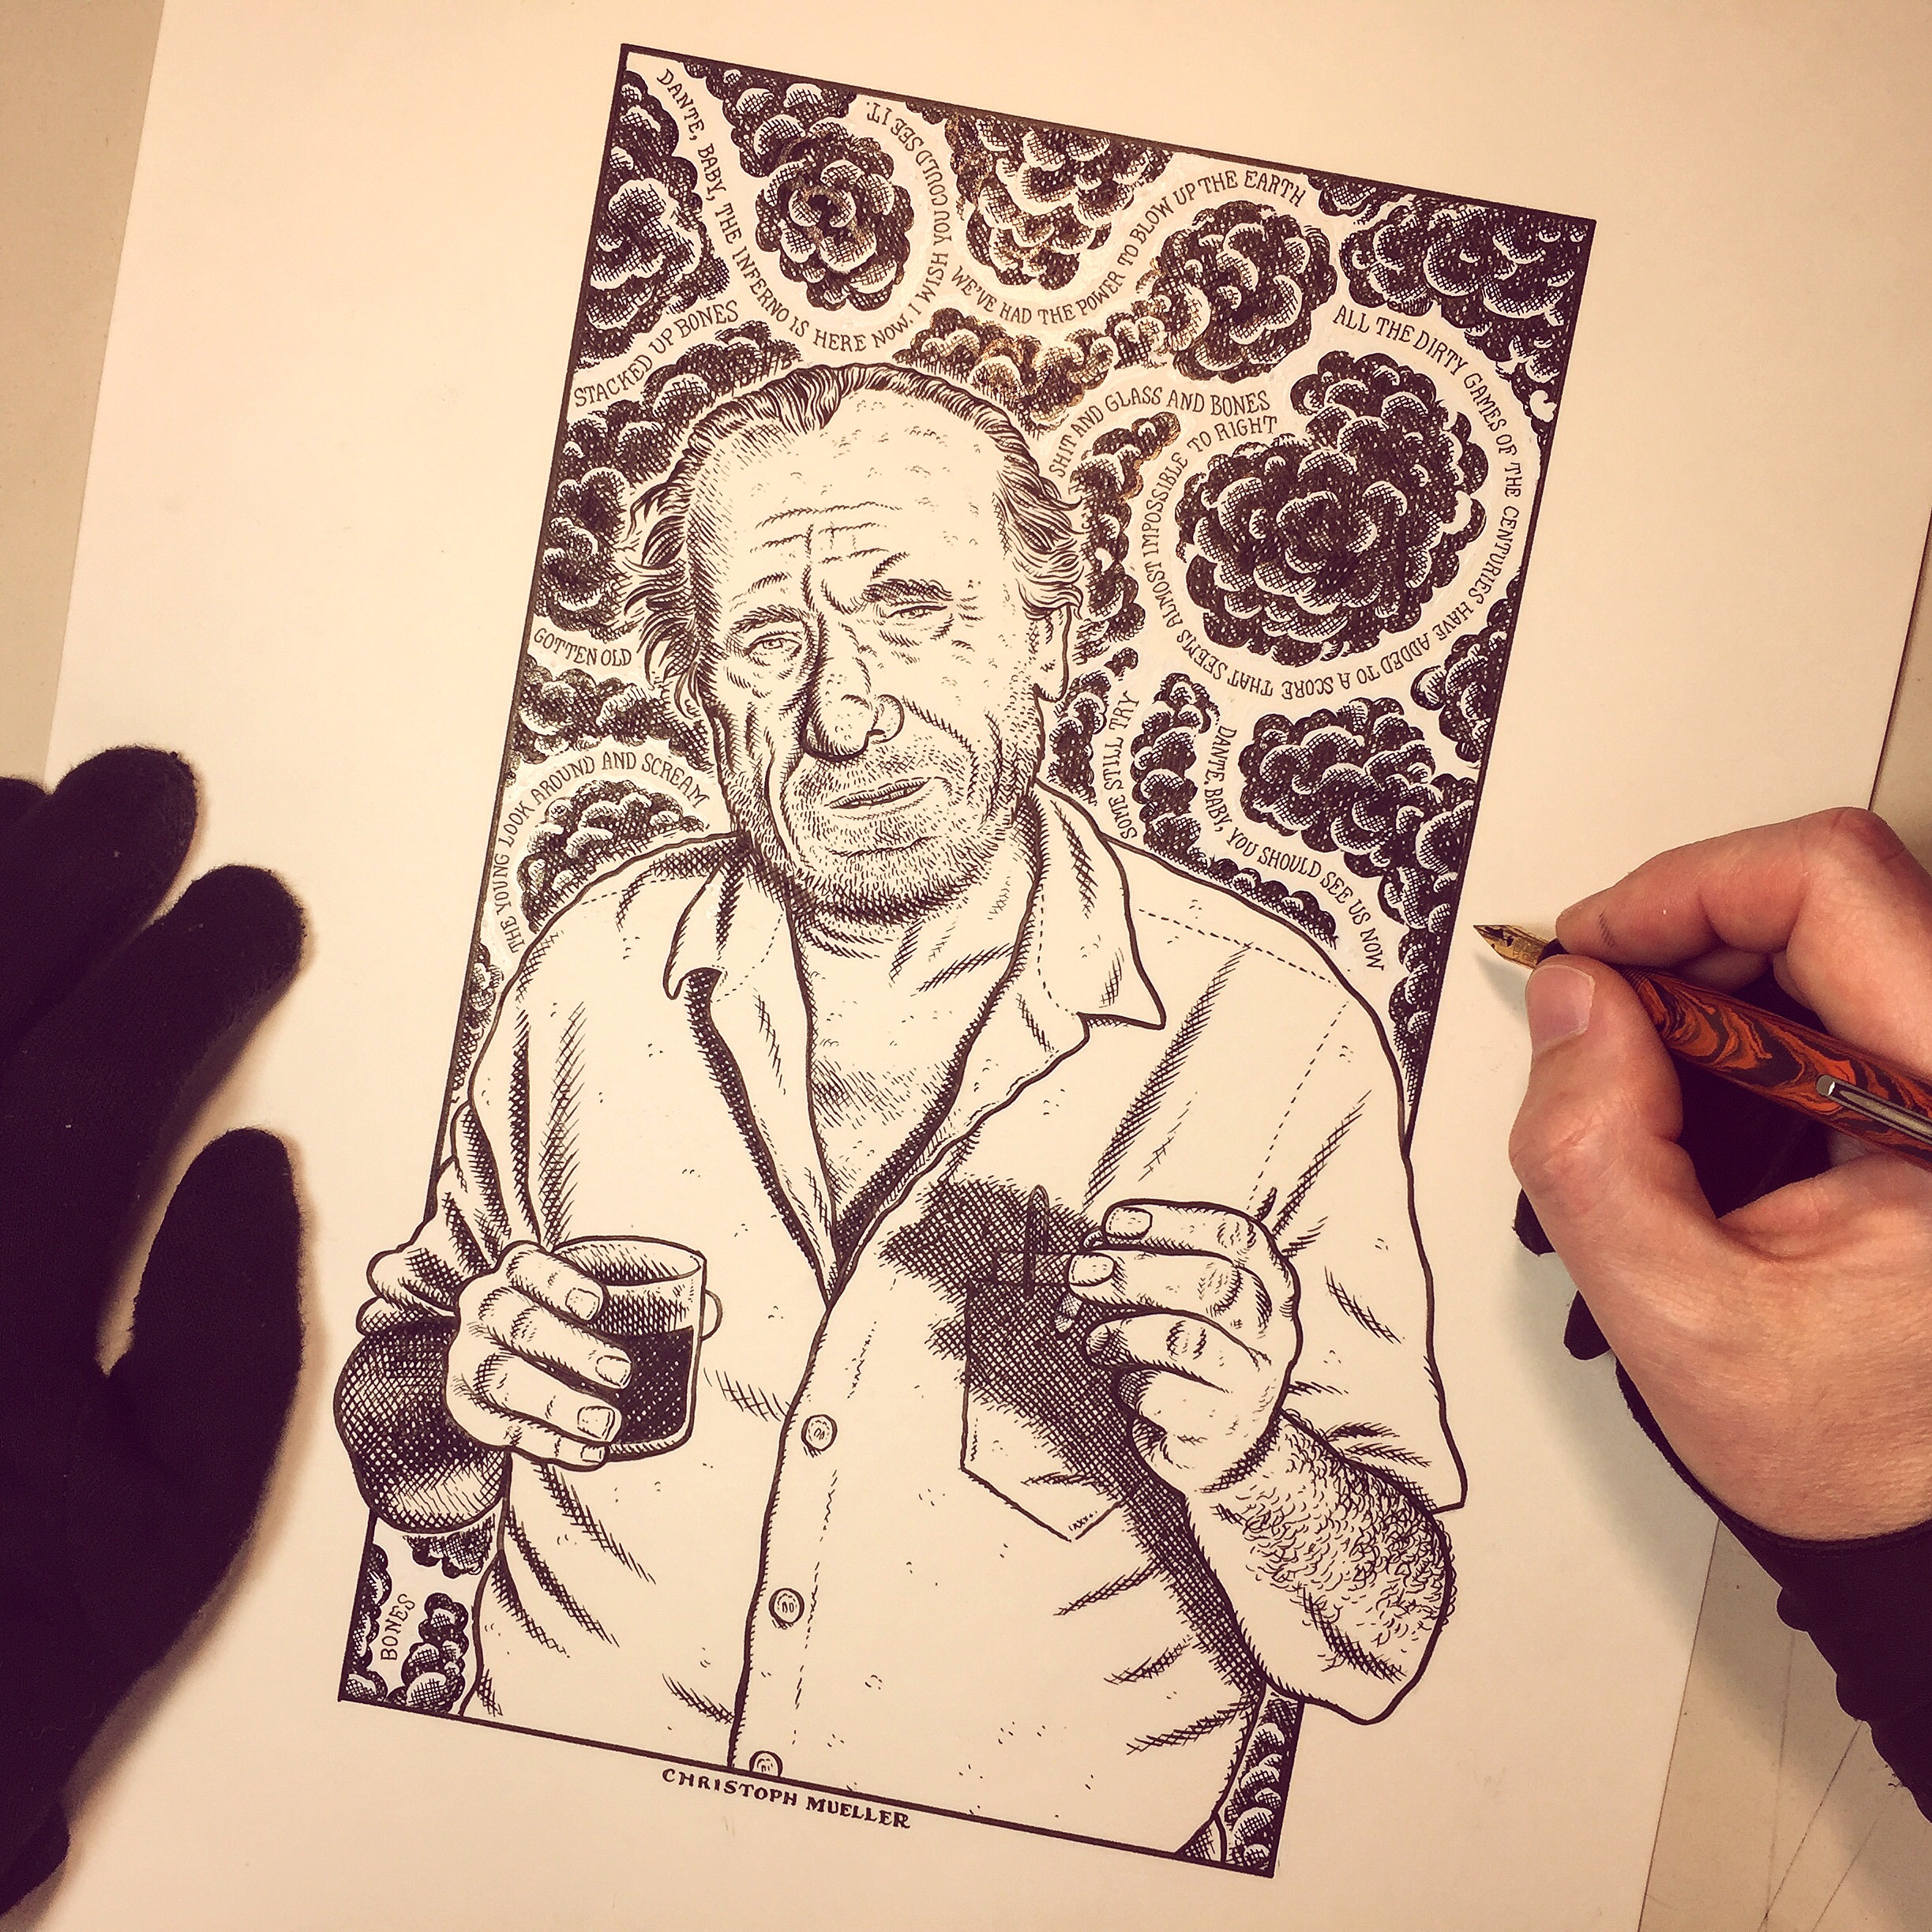 Charles Bukowski by Christoph Mueller